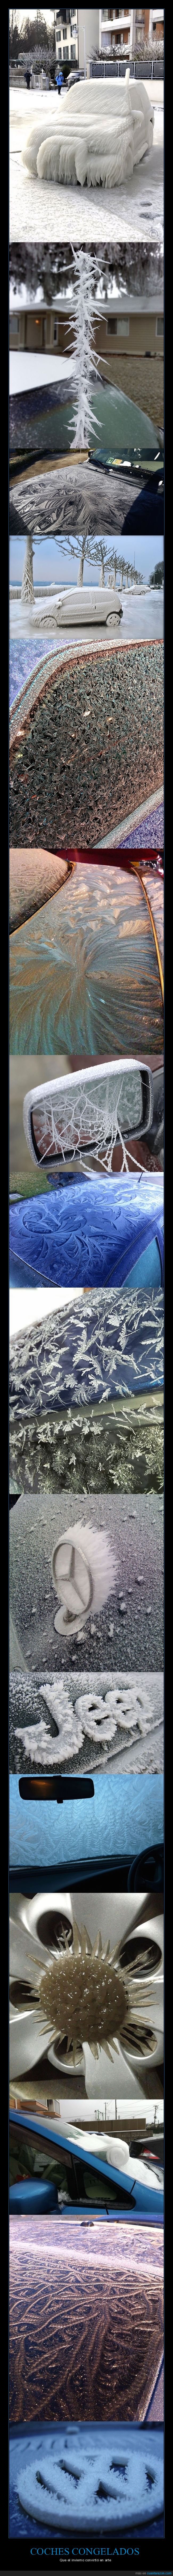 coches,congelados,invierno,frío,arte